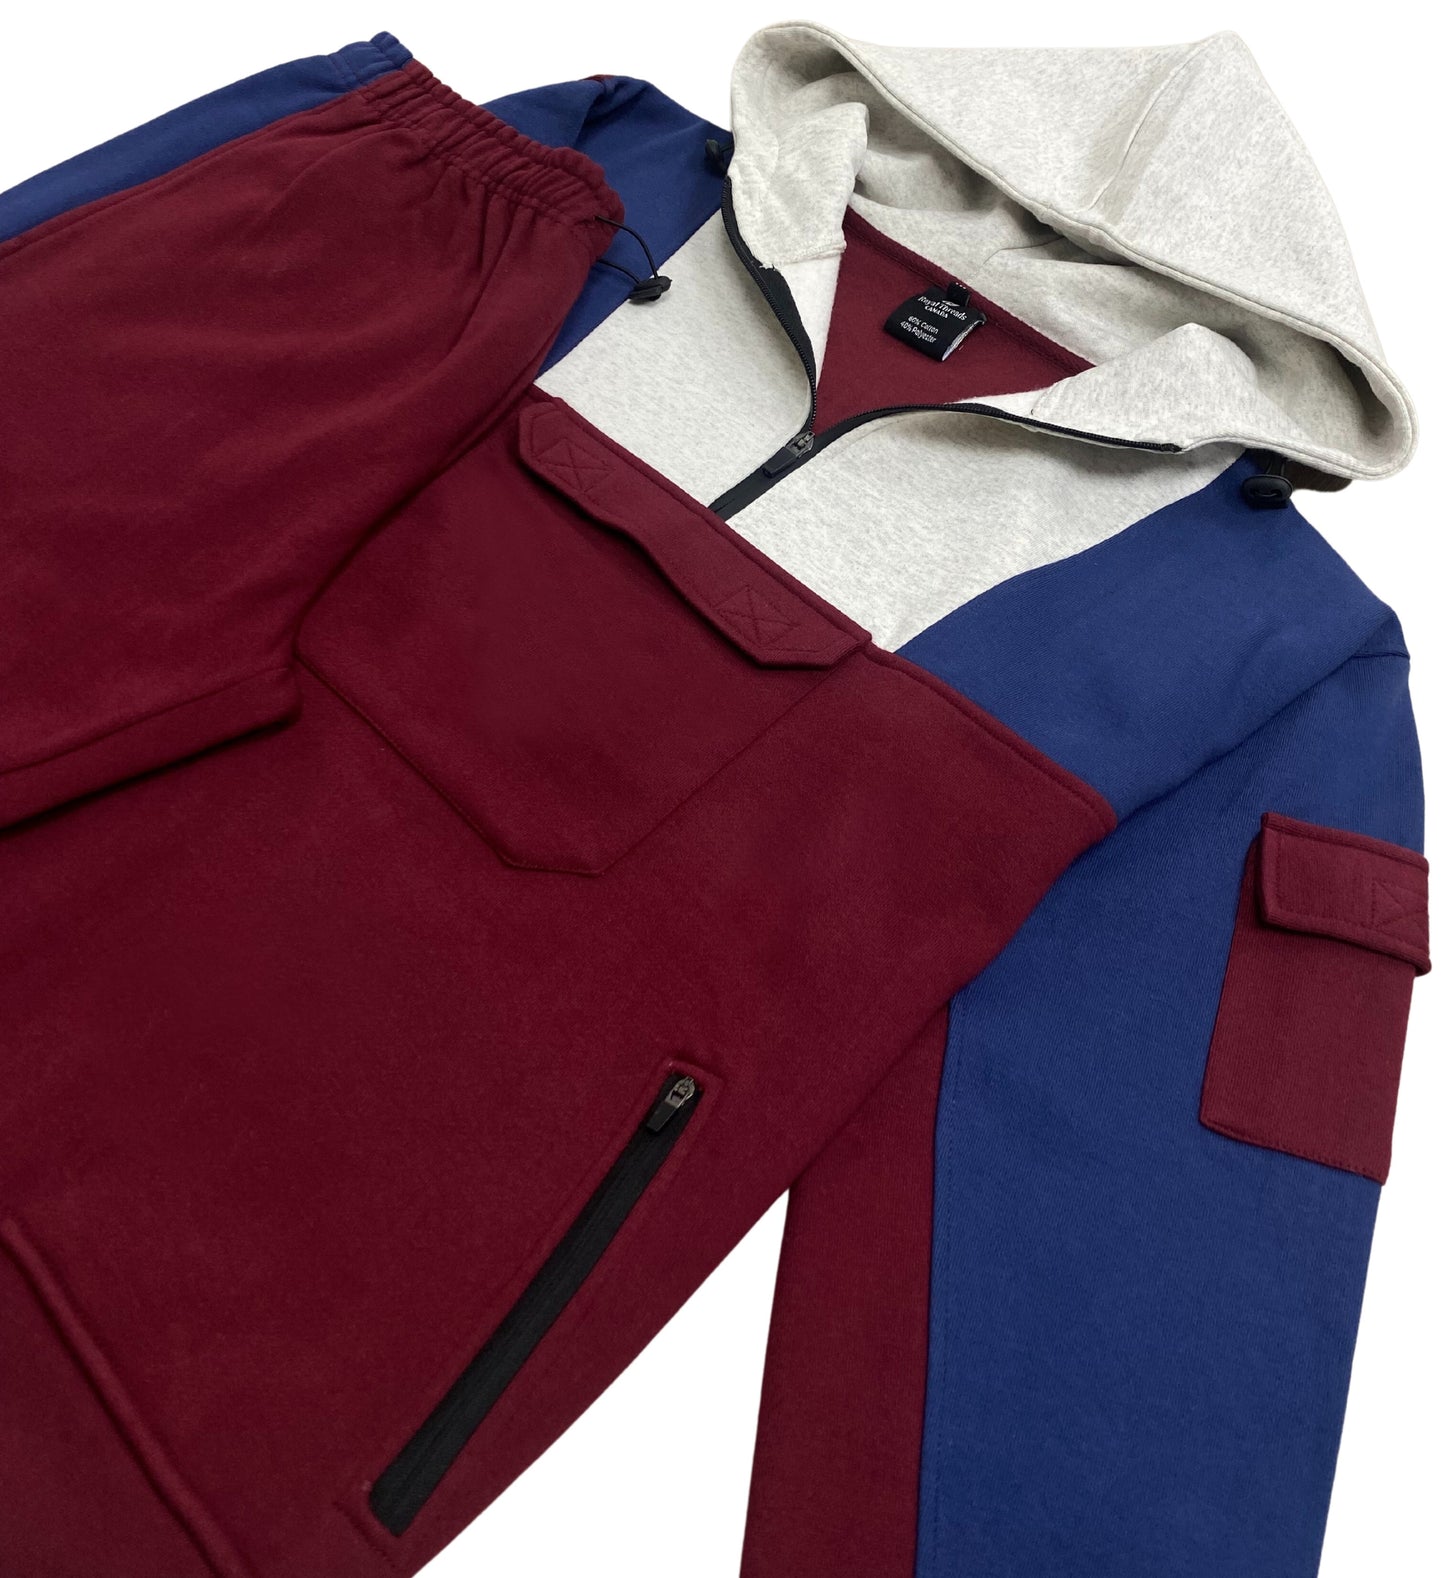 Men's 2-Piece Sweatsuit Quarter Zip Hoodie with Jogger sweatpants Heavy Fleece Material Fleece Outfit